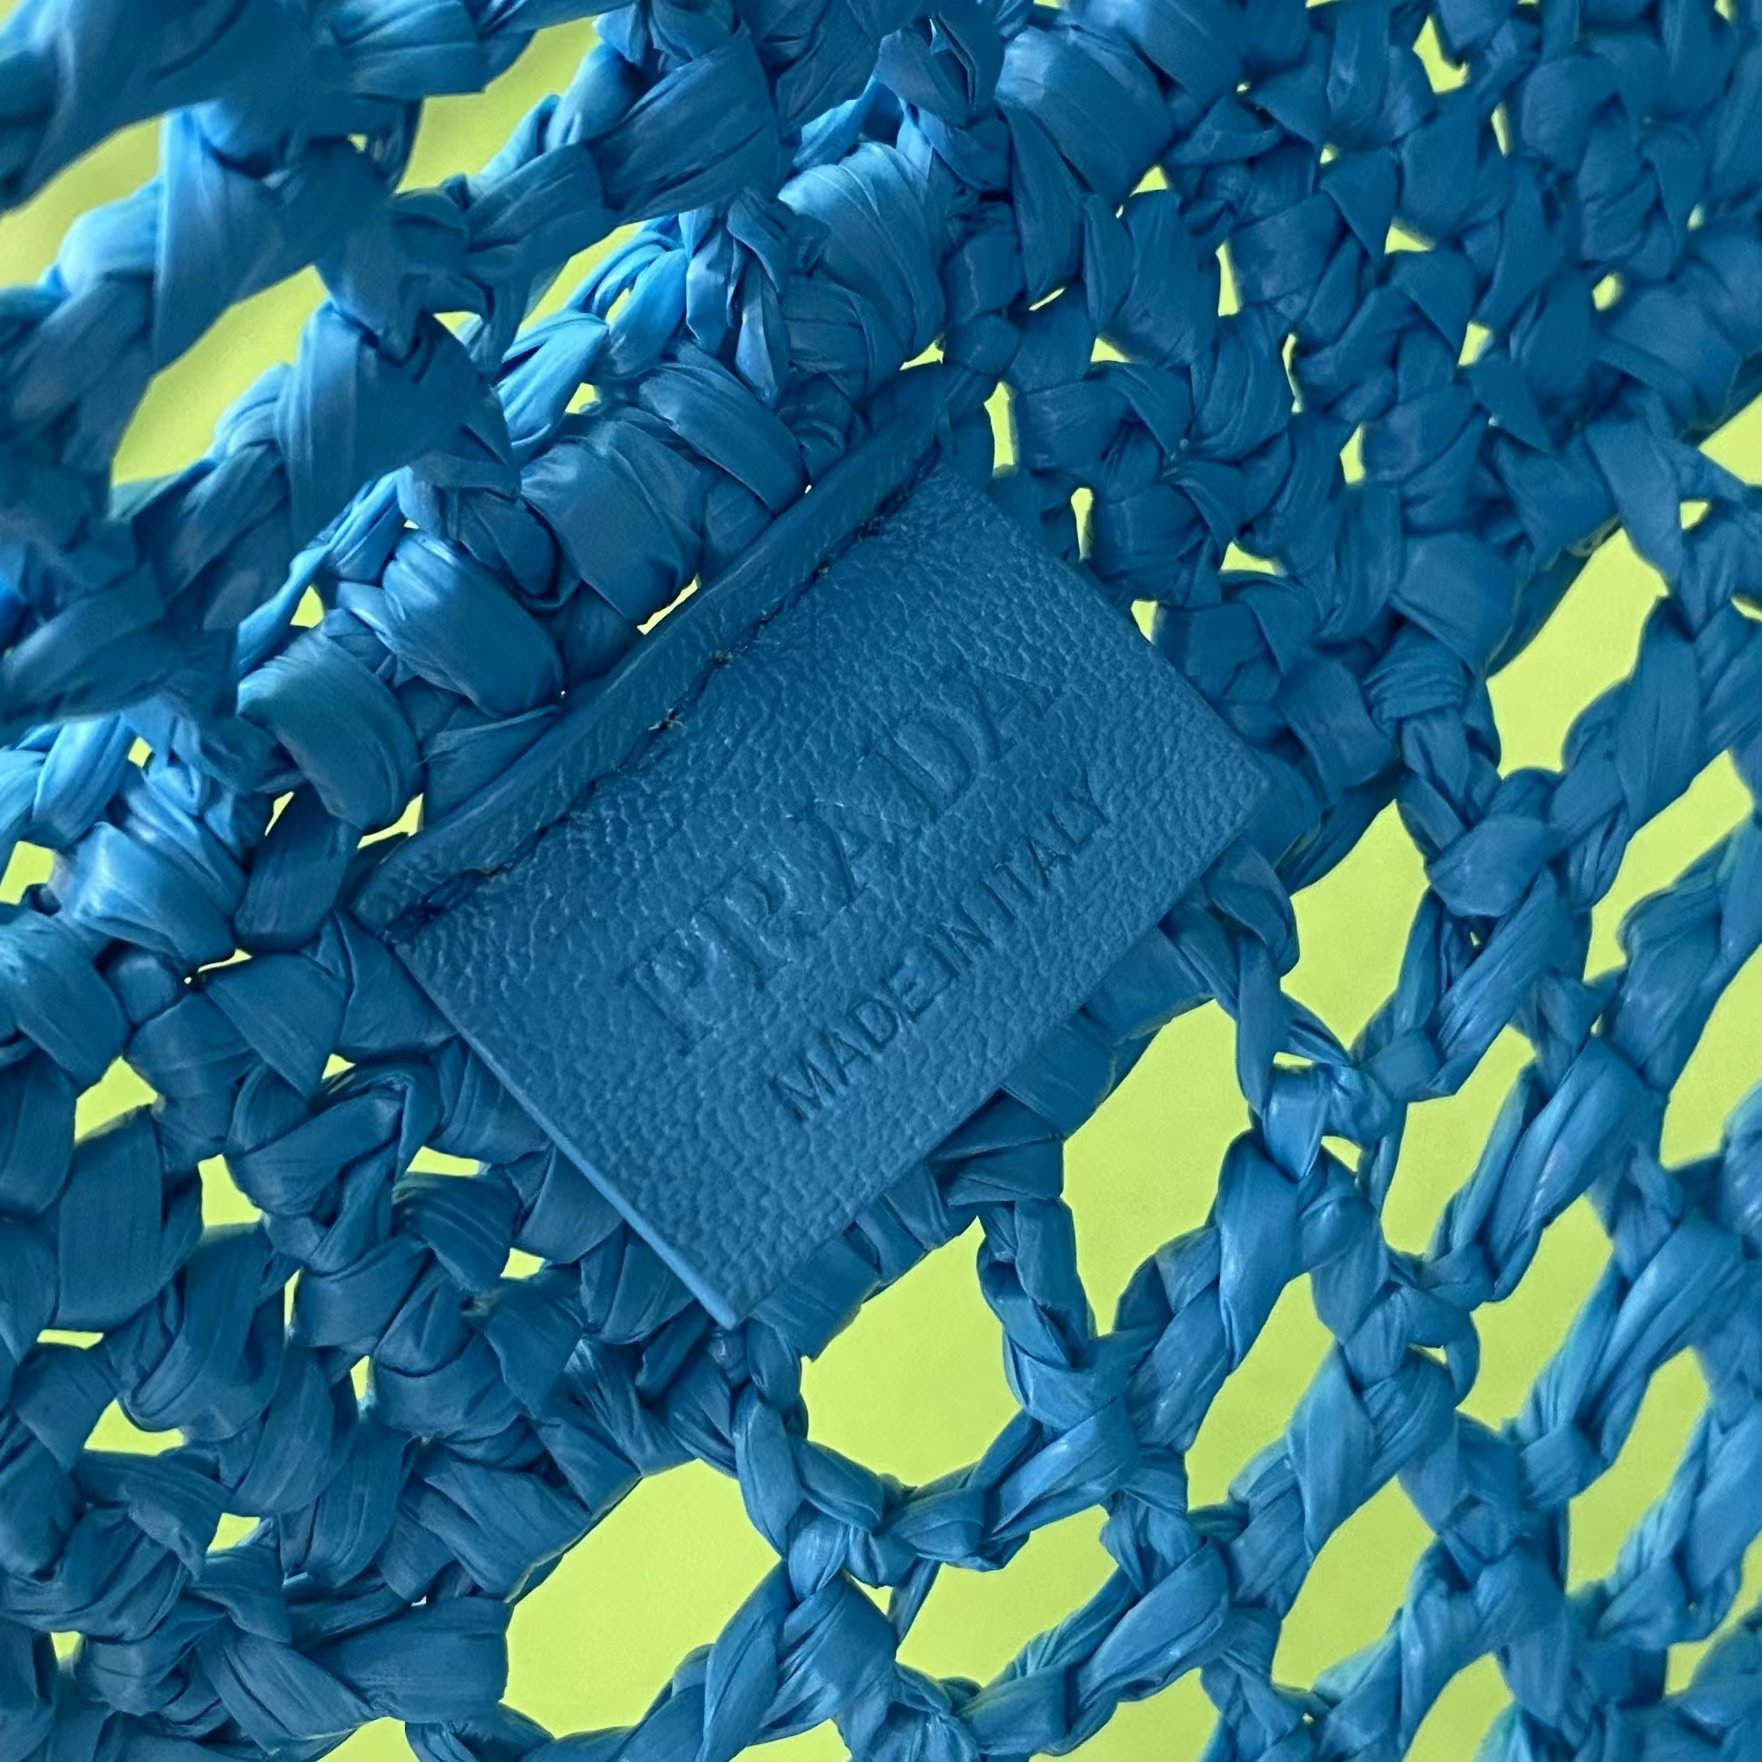 【P570】普拉达22年新款包包 Prada蓝色日本纸材质编织镂空手提单肩包